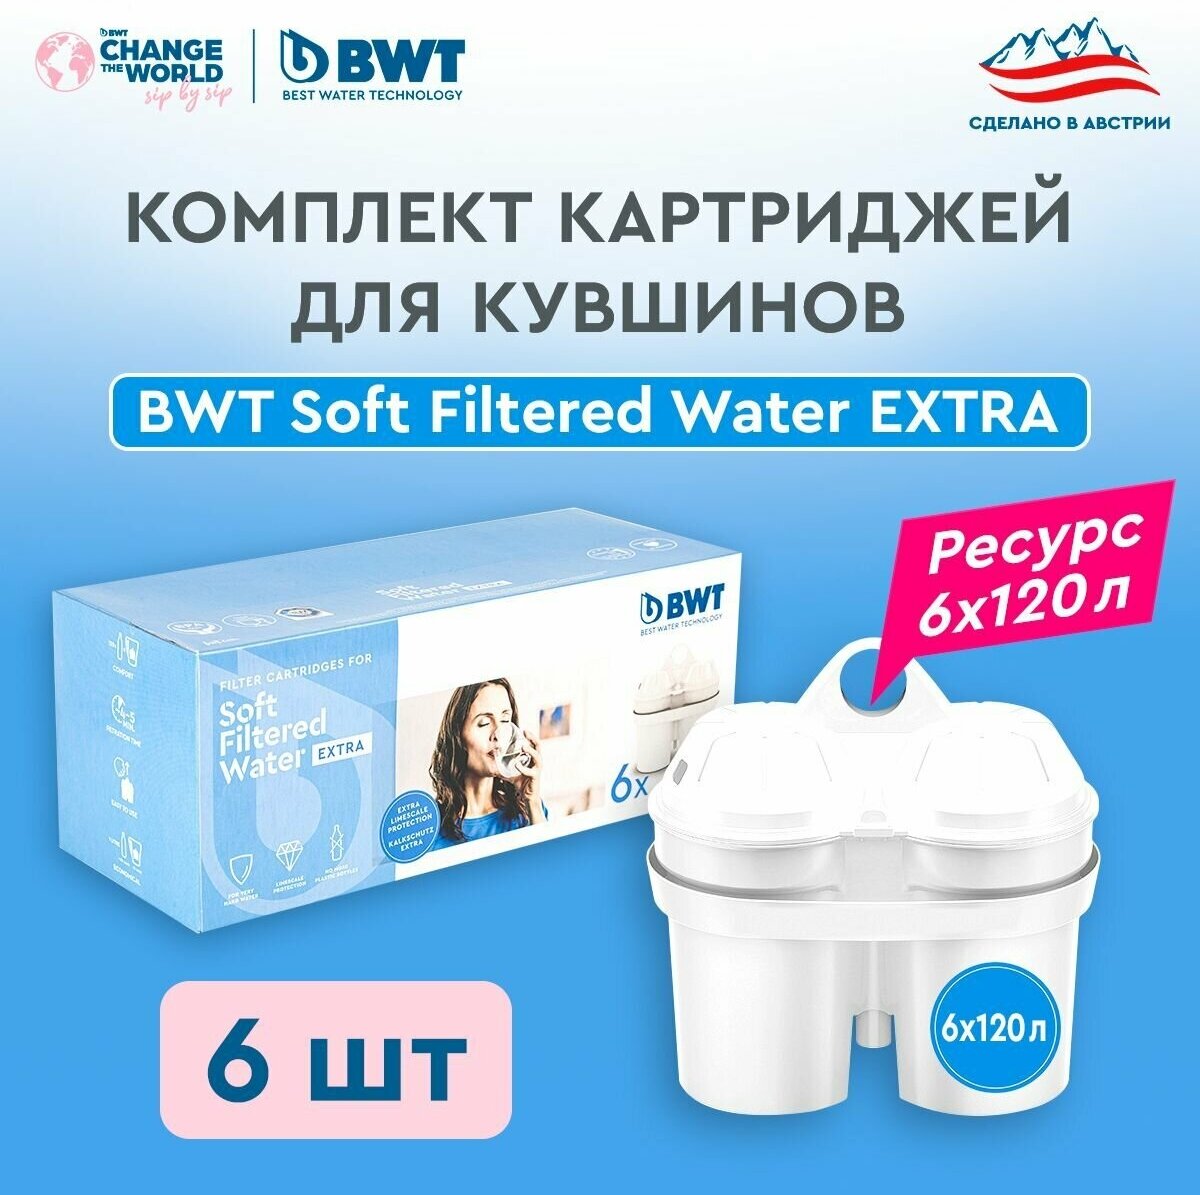 Картридж для кувшинов BWT Soft Filtered Water Extra Для смягчения воды - двойная защита от накипи, 6 шт. для кувшинов BWT PENGUIN/ BWT VIDA/БВТ